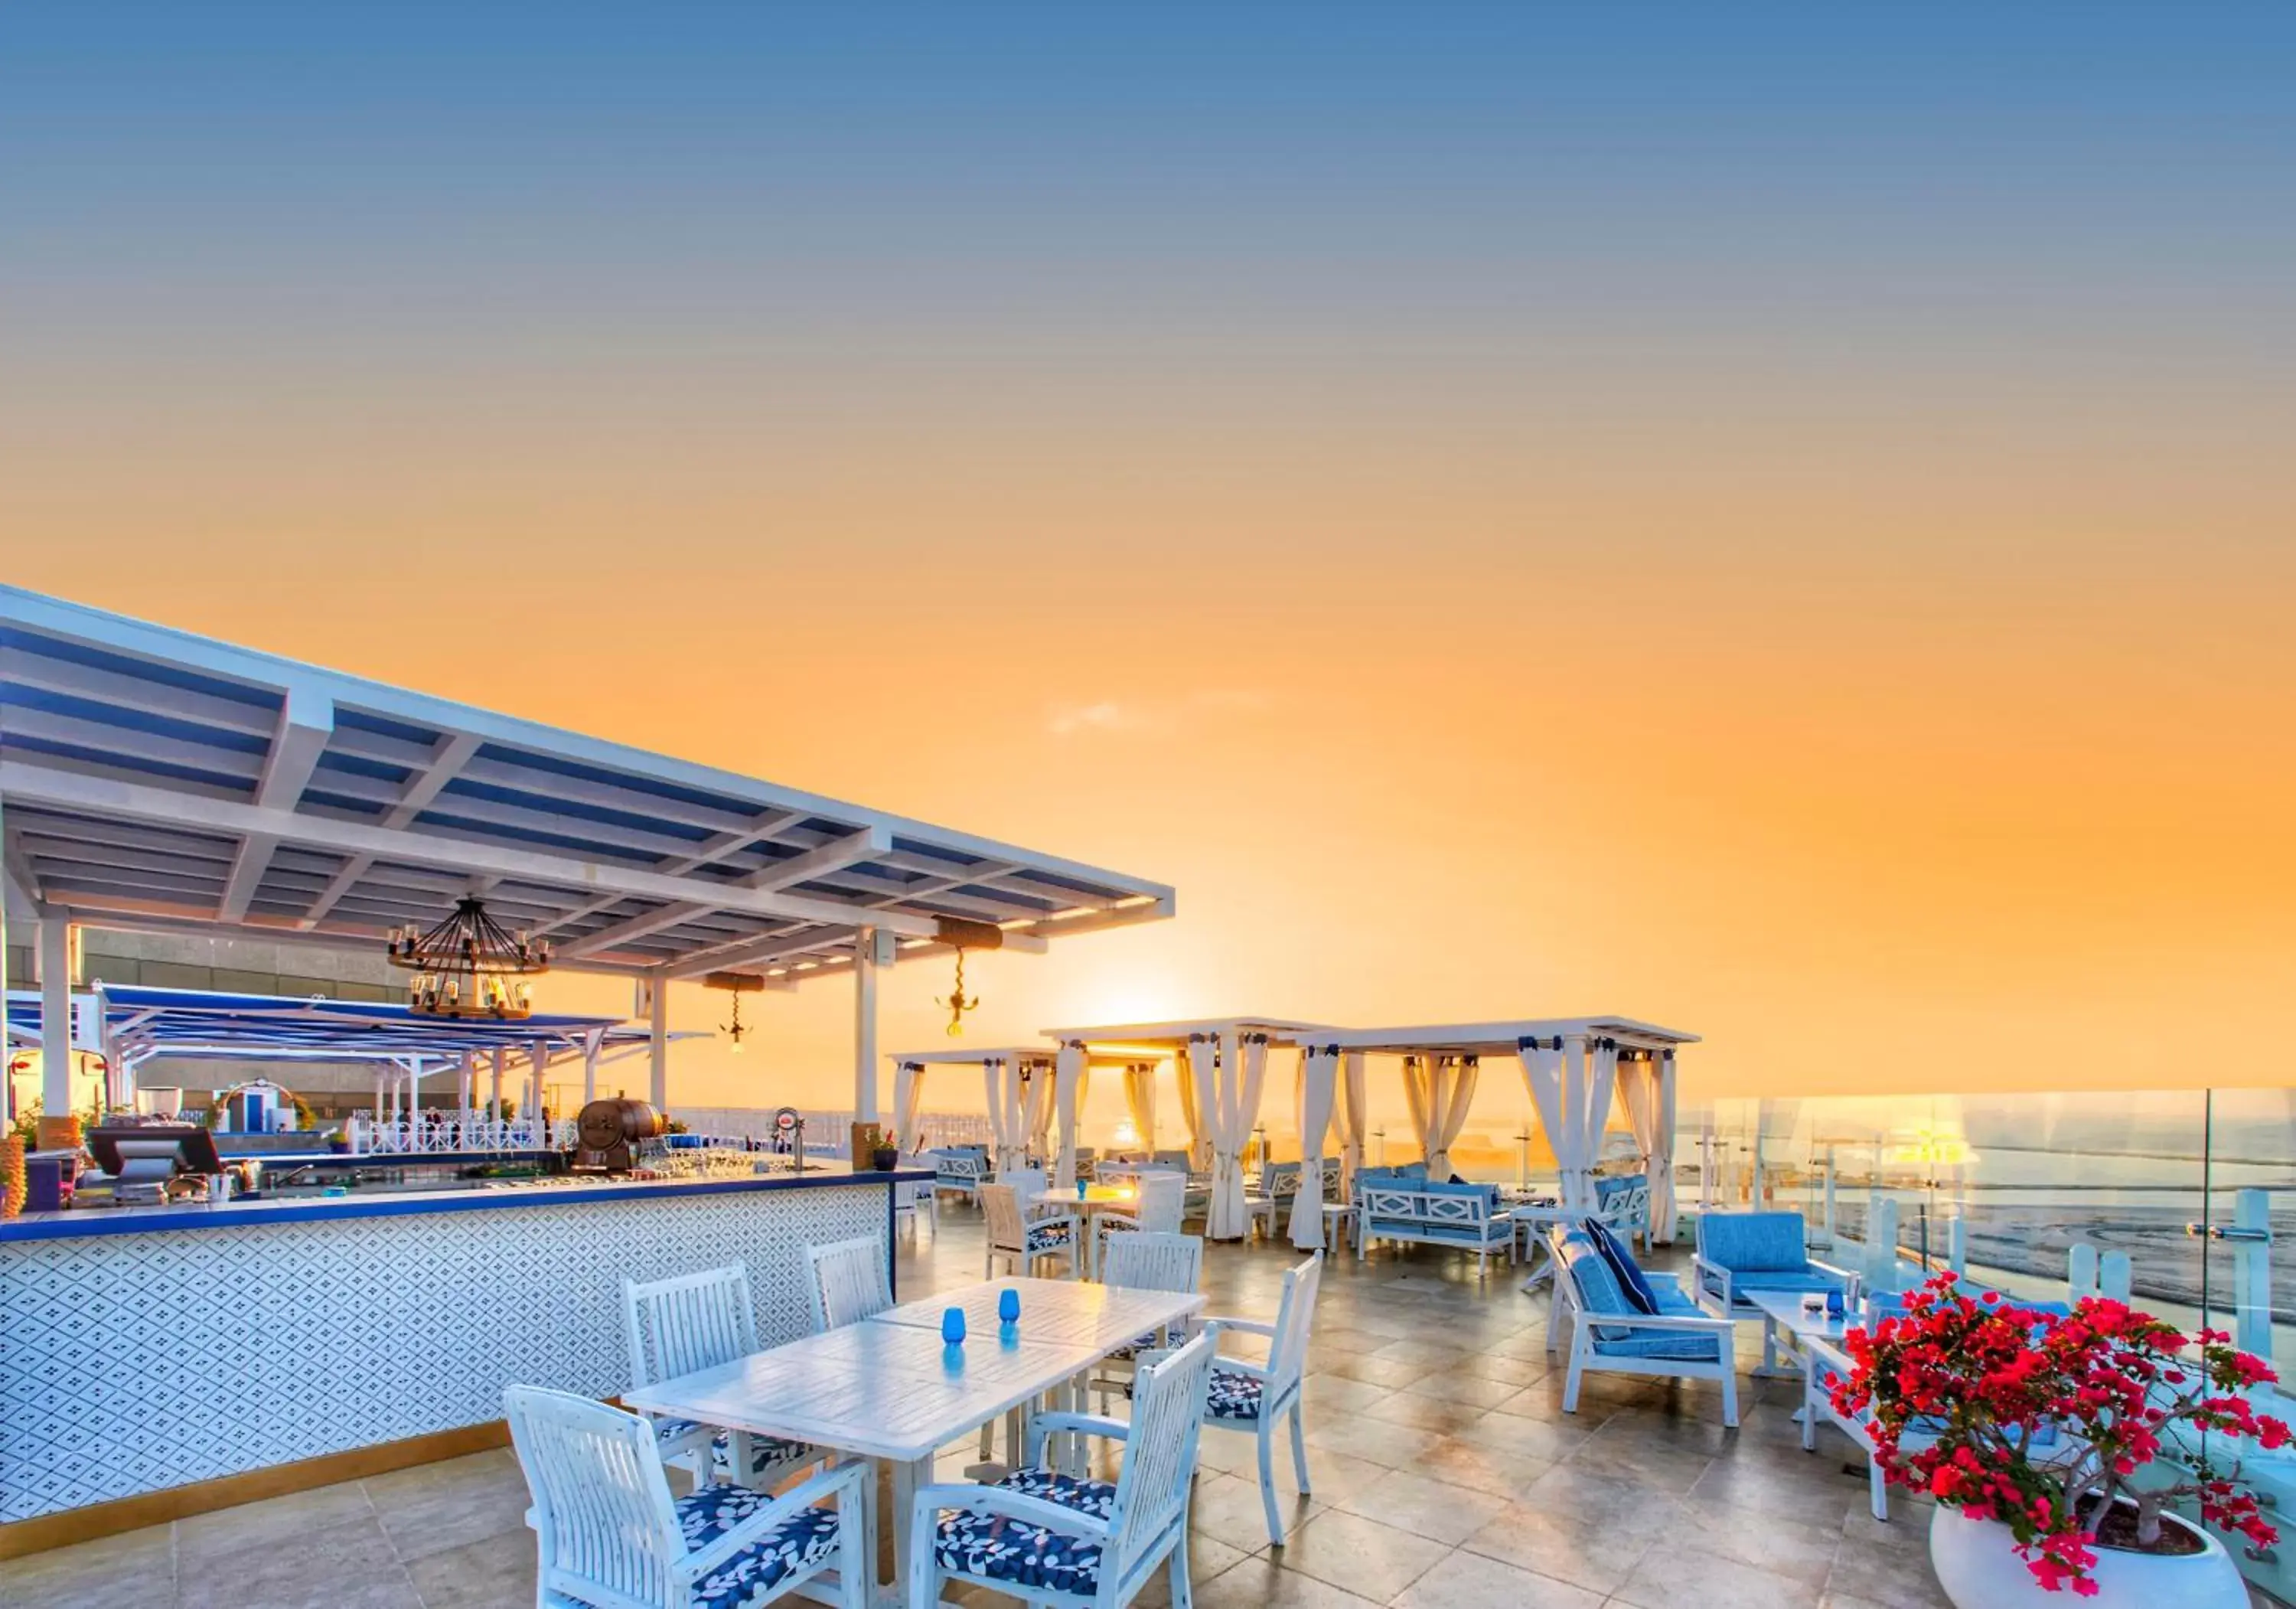 Restaurant/places to eat, Sunrise/Sunset in Hyatt Regency Dubai - Corniche